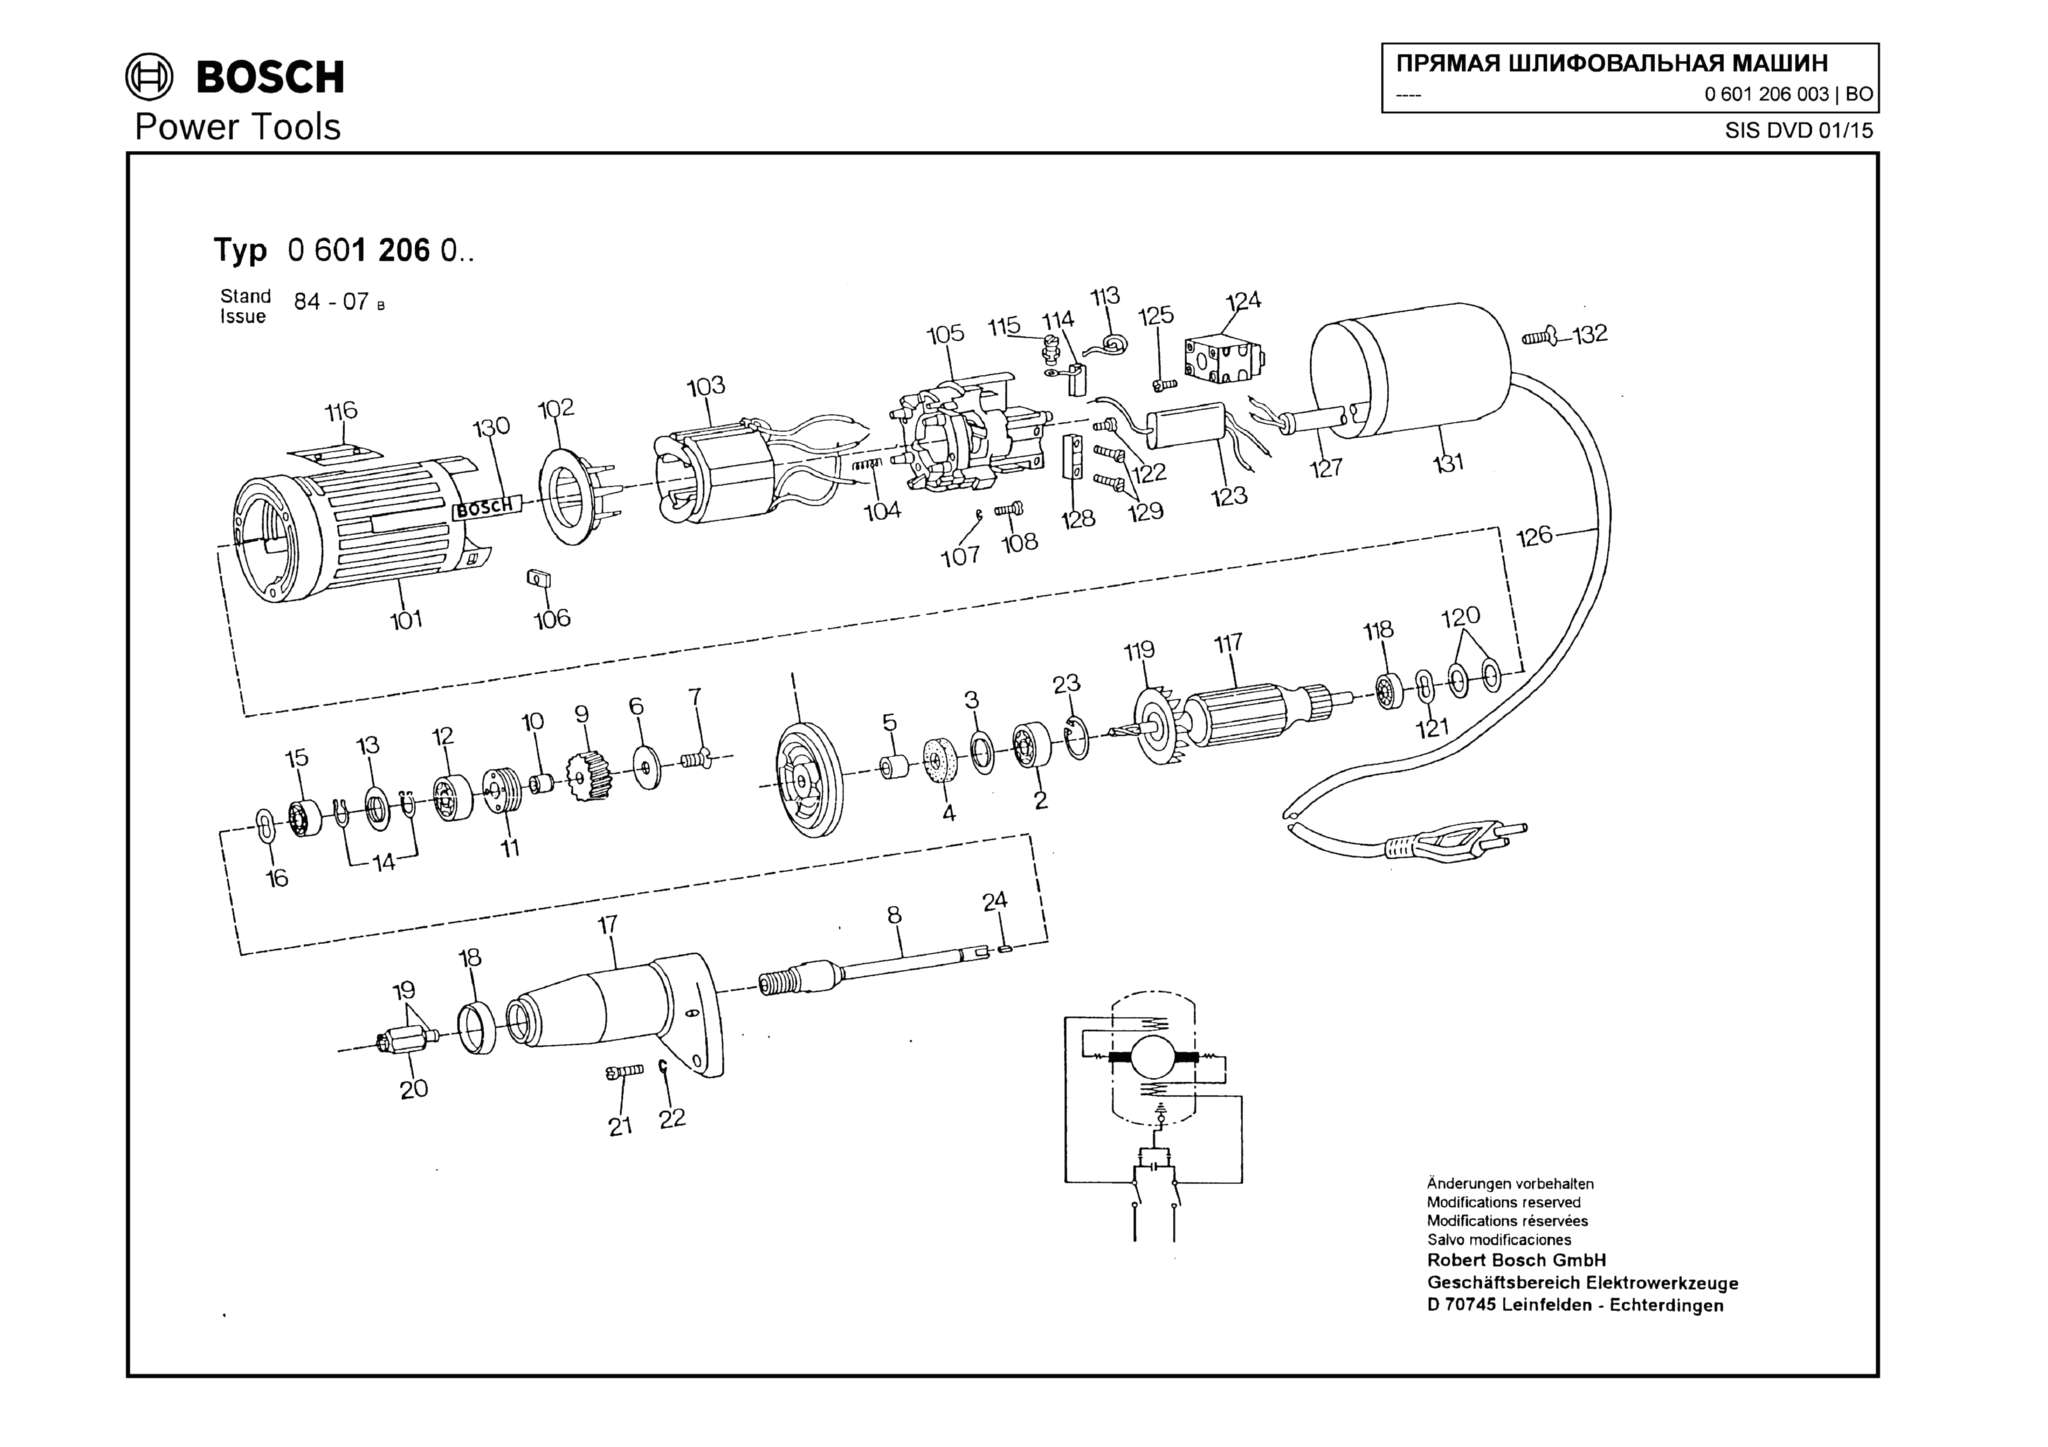 Запчасти, схема и деталировка Bosch (ТИП 0601206003)